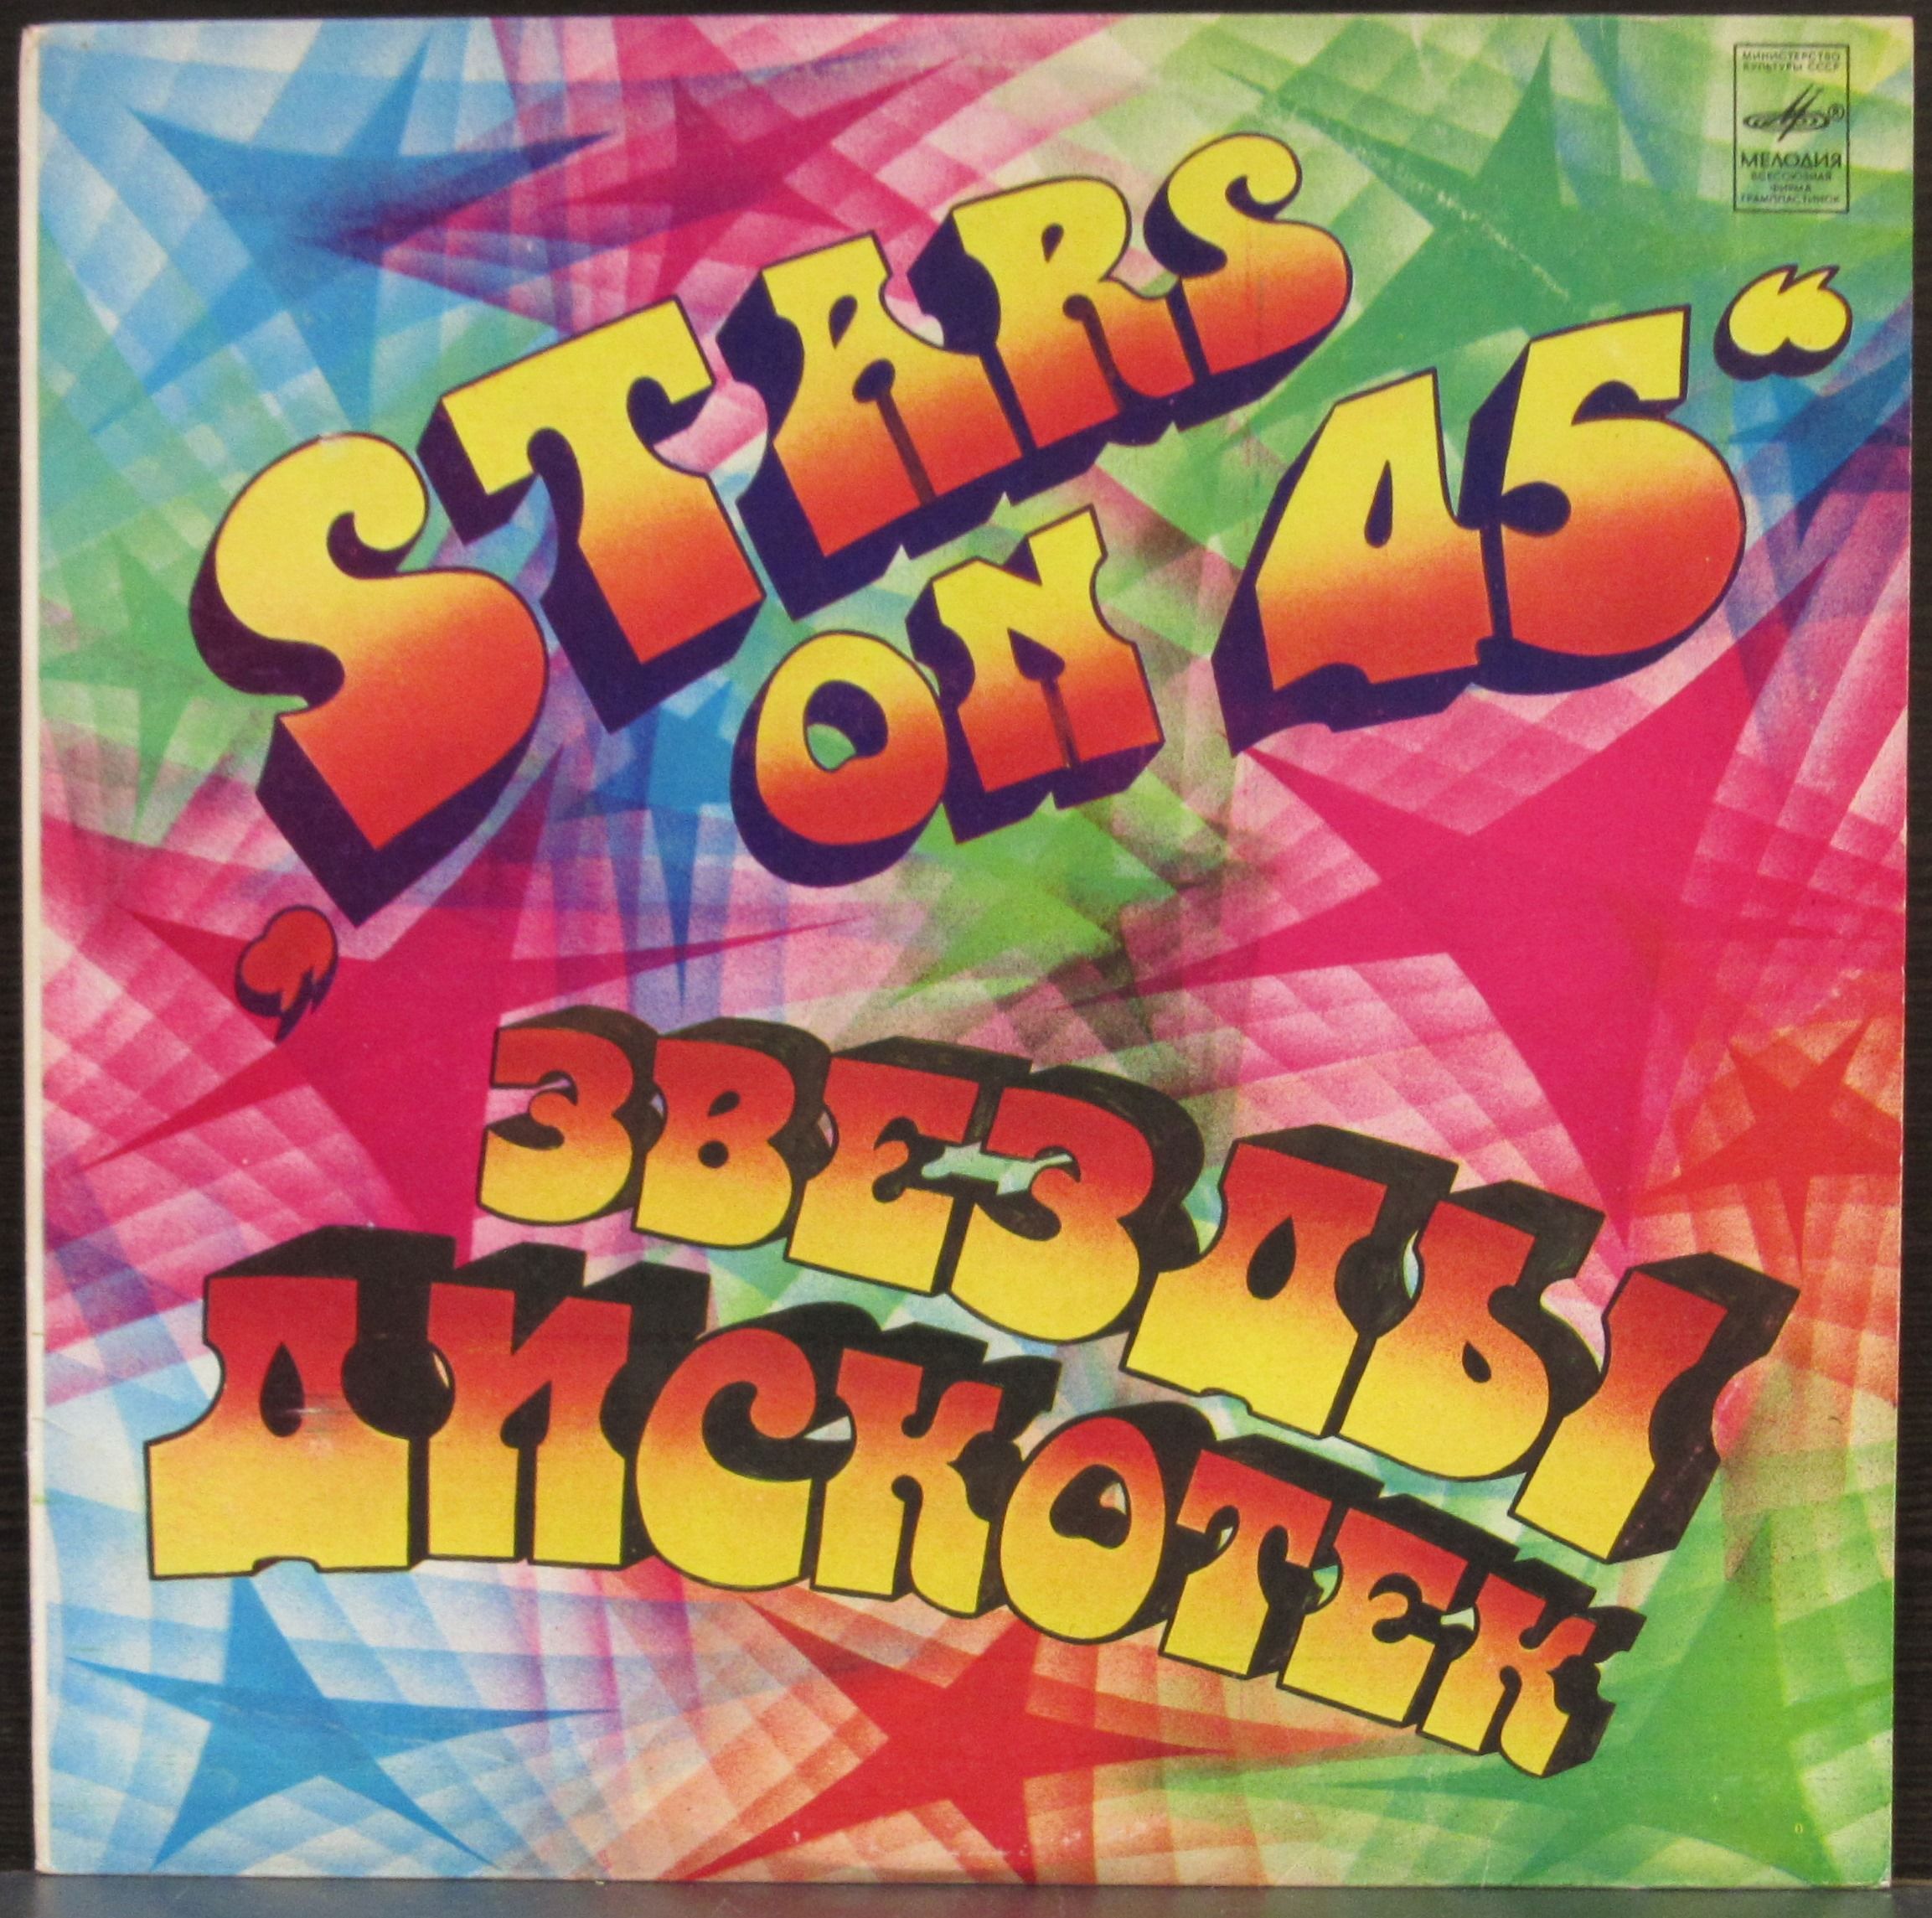 Альбом группы звезды. Группа Stars on 45. Stars on 45 пластинка. Stars on 45 винил. Обложка альбома Stars on 45.